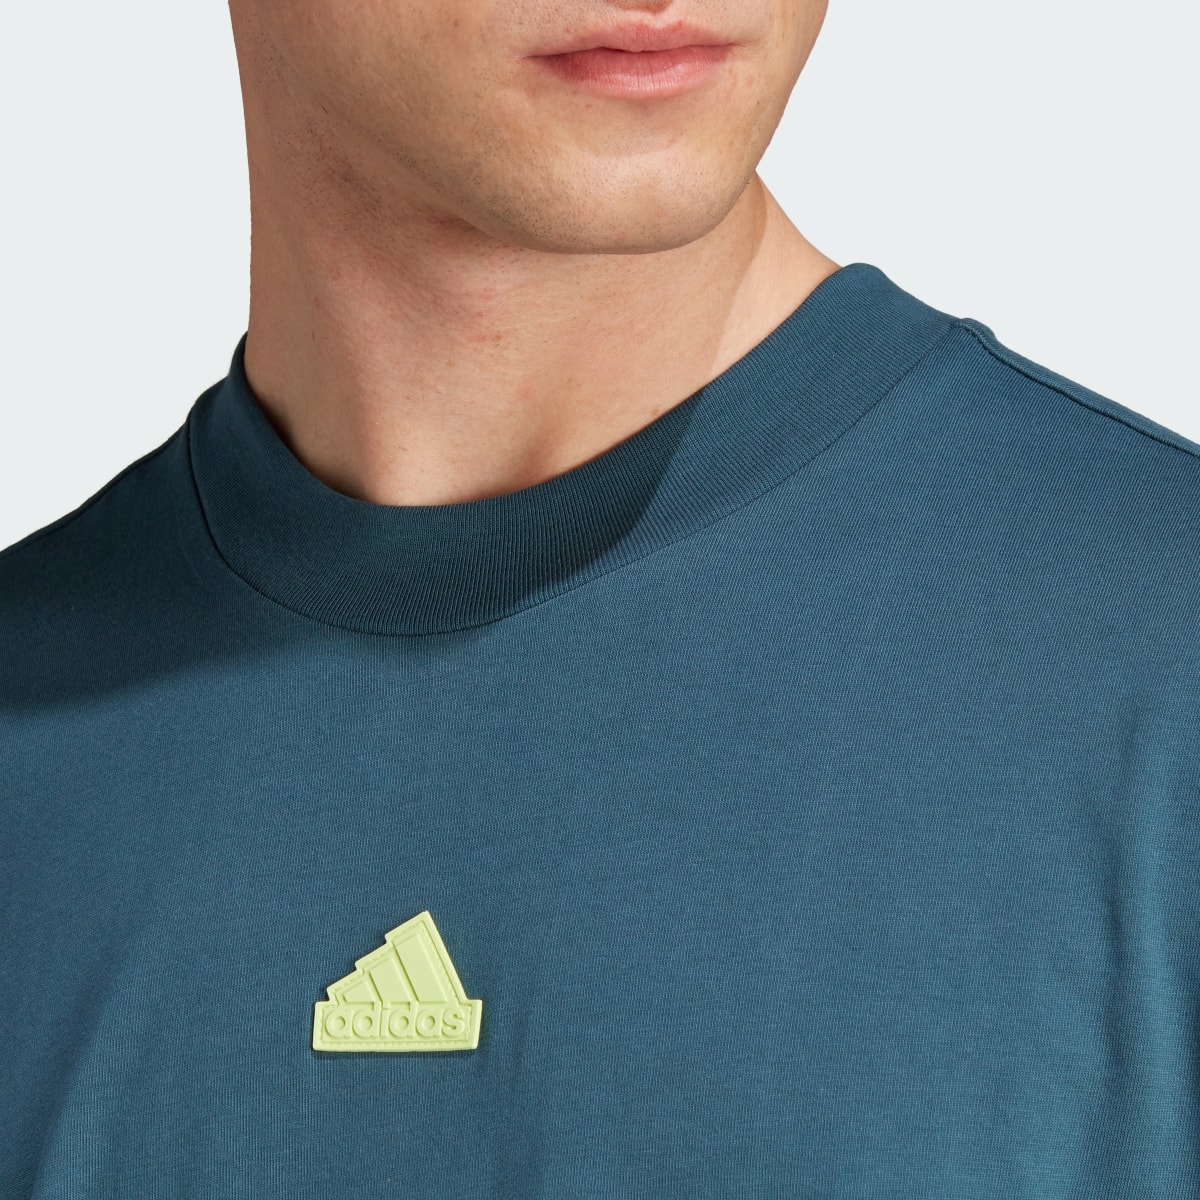 Adidas T-shirt Future Icons 3-Stripes. 6